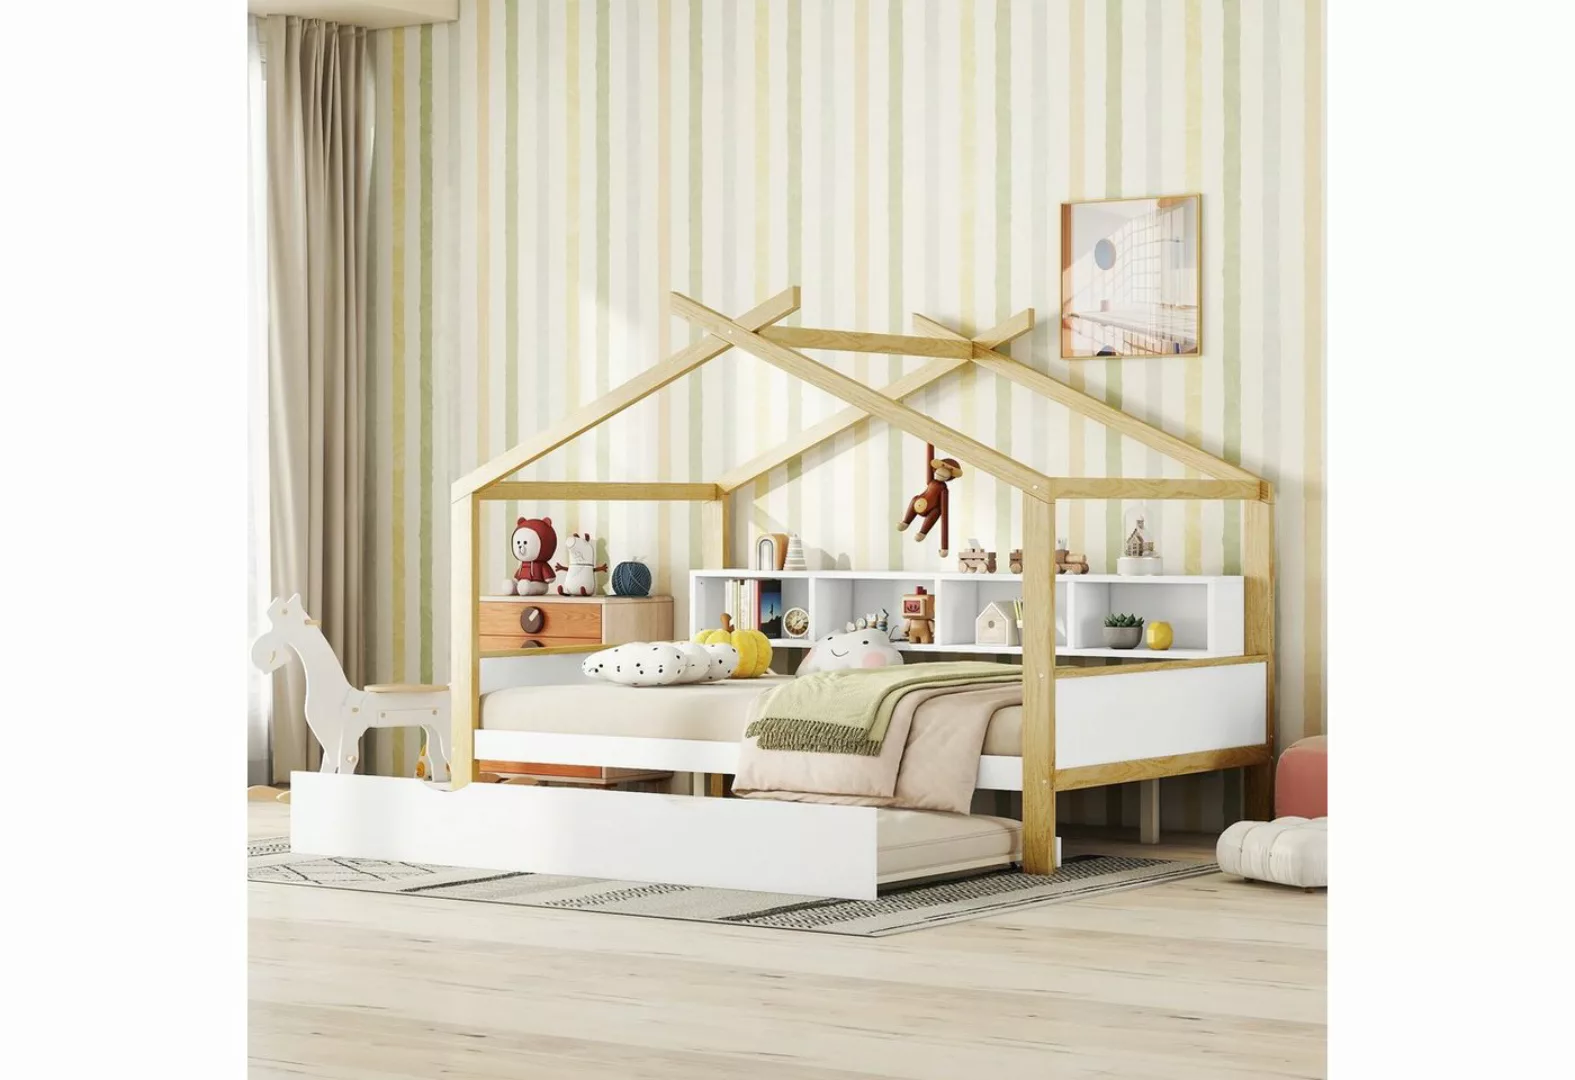 Ulife Kinderbett Hausbett, ausgestattet mit Ausziehbett,140*200 cm, Einziga günstig online kaufen